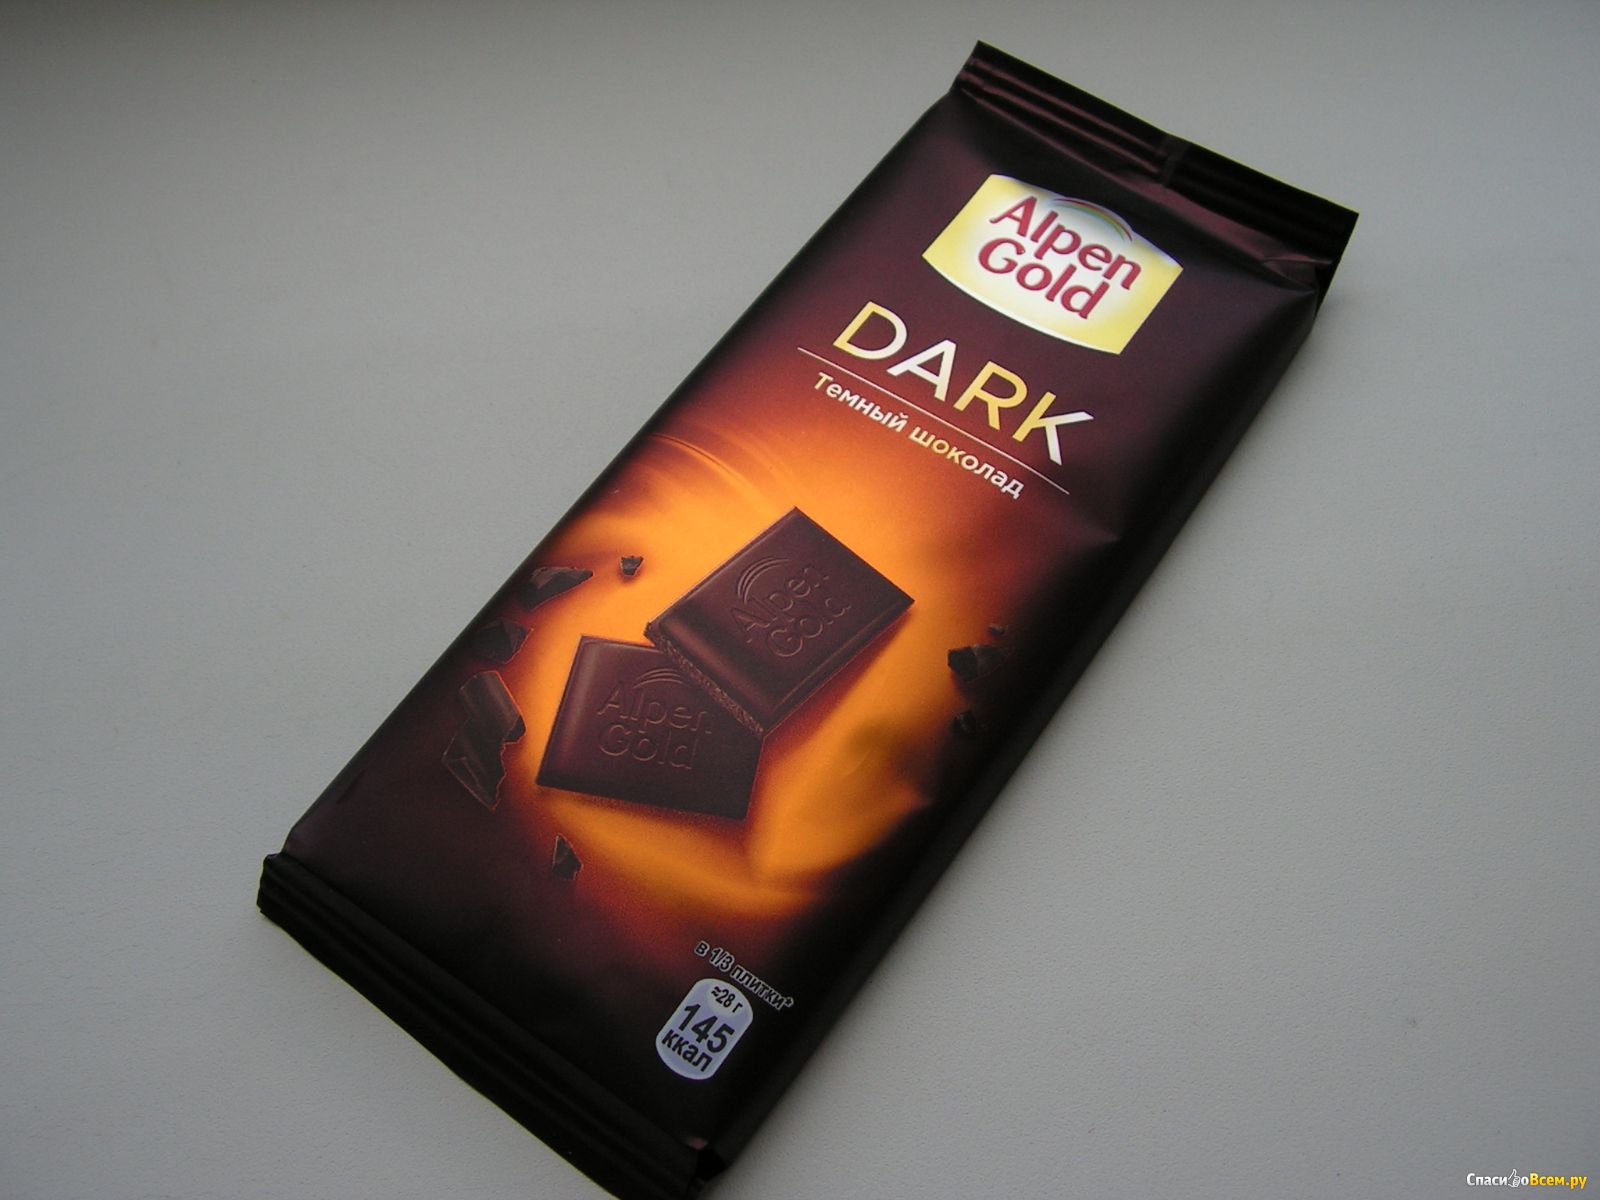 Лучший темный шоколад. Шоколад Альпен Гольд темный шоколад. Шоколад Альпен Гольд дарк. Тёмный шокрлад Альпен Голд. Alpen Gold Dark темный шоколад.